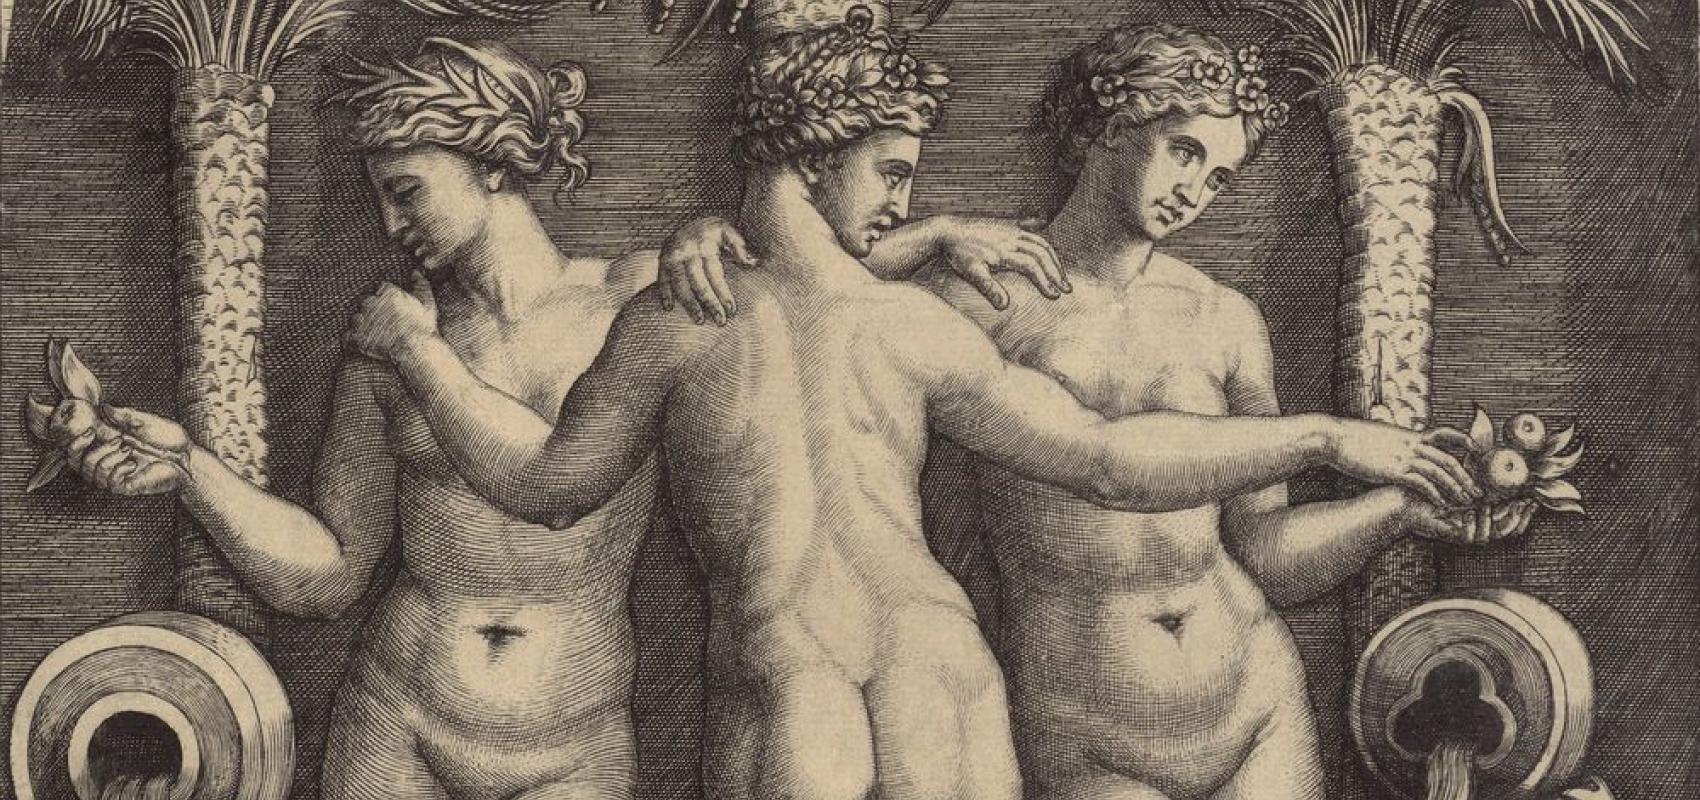 Les trois Grâces ou Naïades d'après Raphaël par Marcantonio Raimondi - Début XVIe siècle - BnF